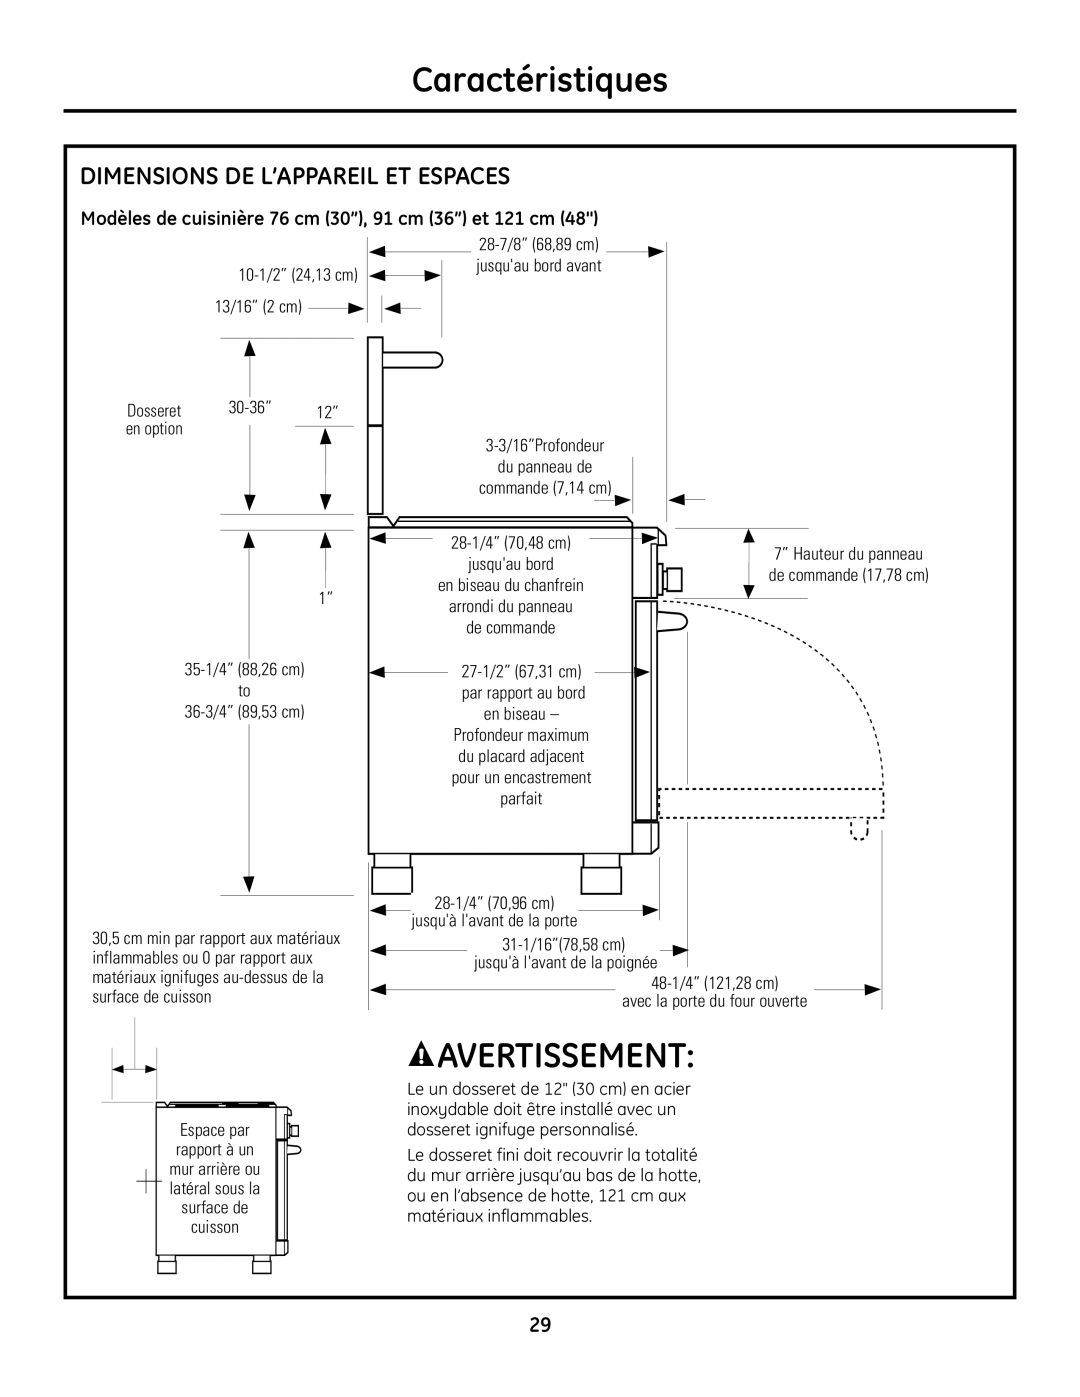 GE Monogram Range Modèles de cuisinière 76 cm 30’’, 91 cm 36’’ et 121 cm, Caractéristiques, Avertissement 